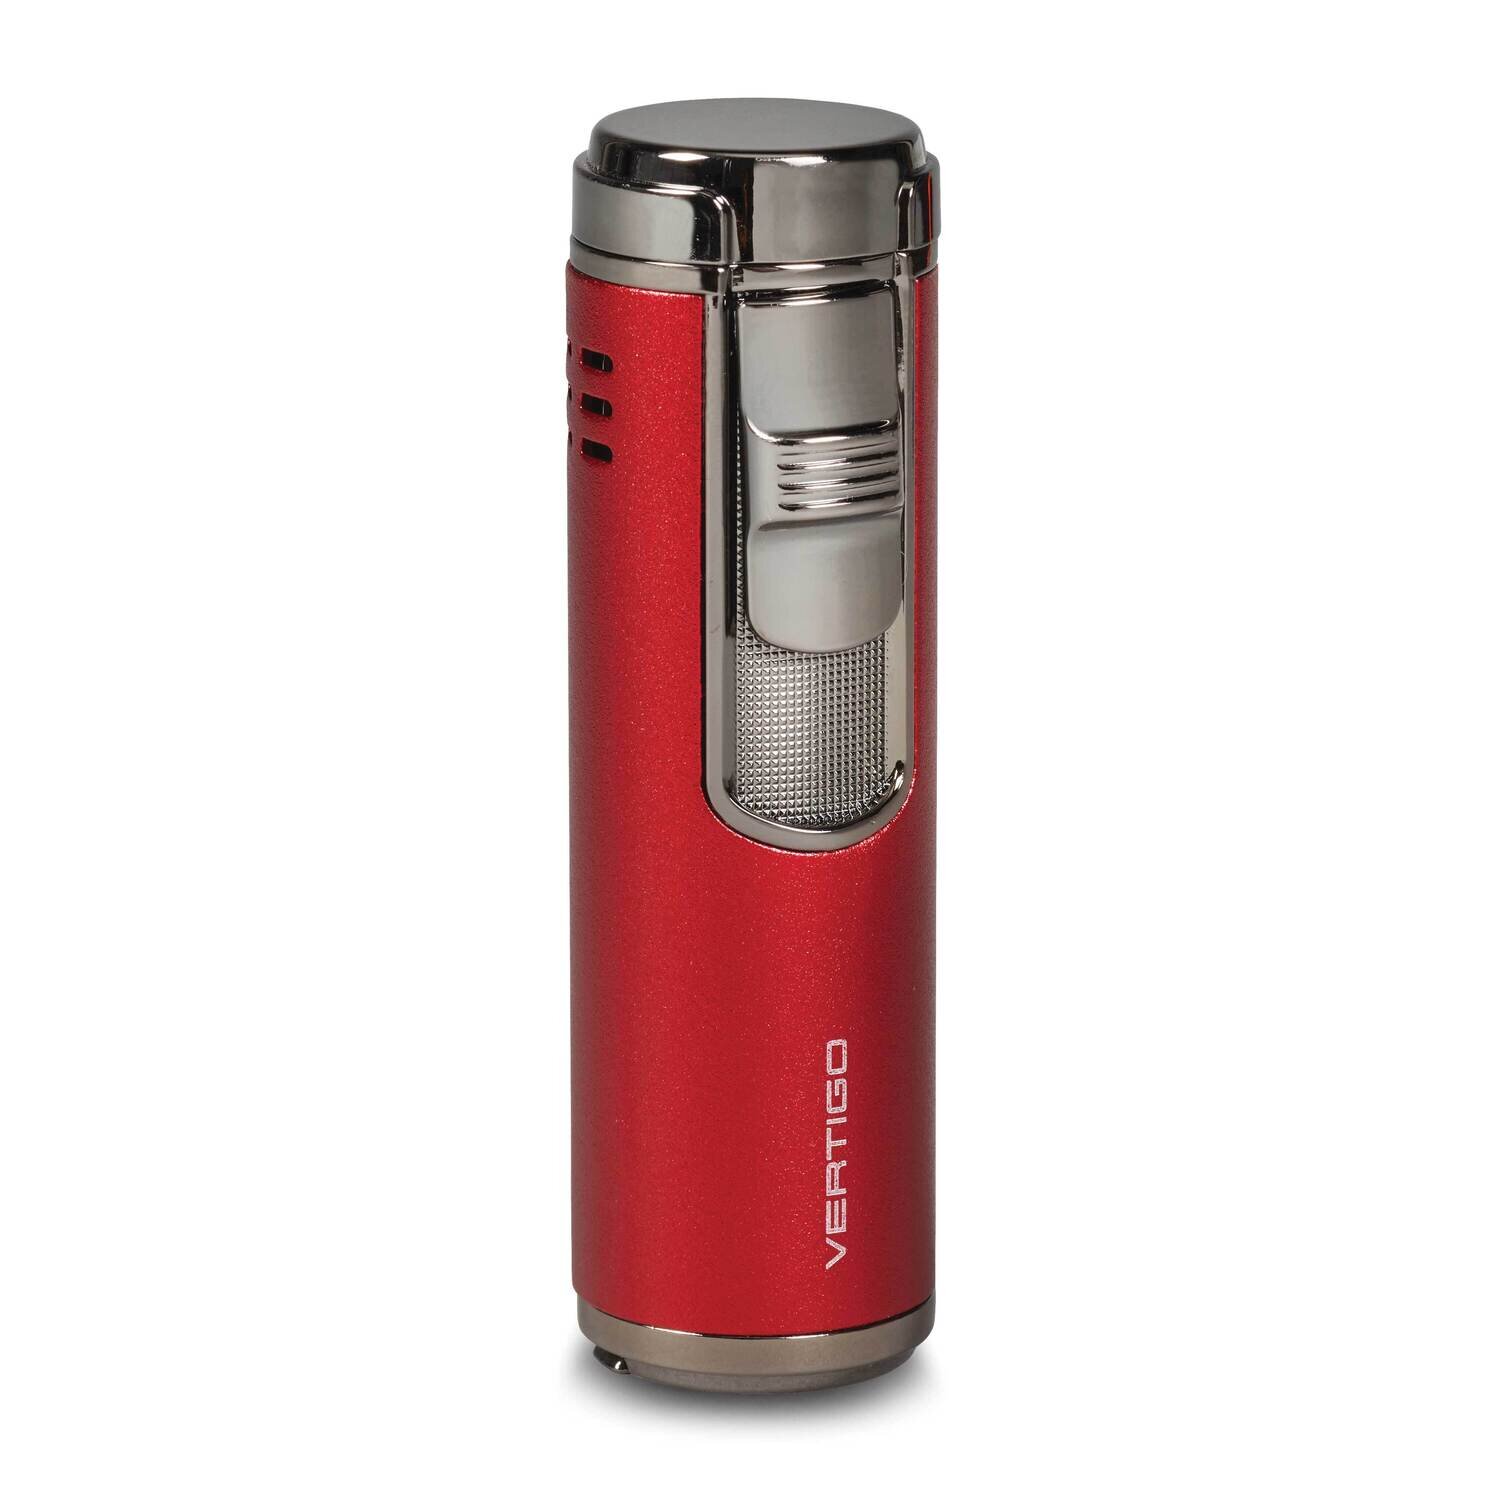 Vertigo Eloquence Red Fold-out Punch Quad Flame Lighter GM25115RD